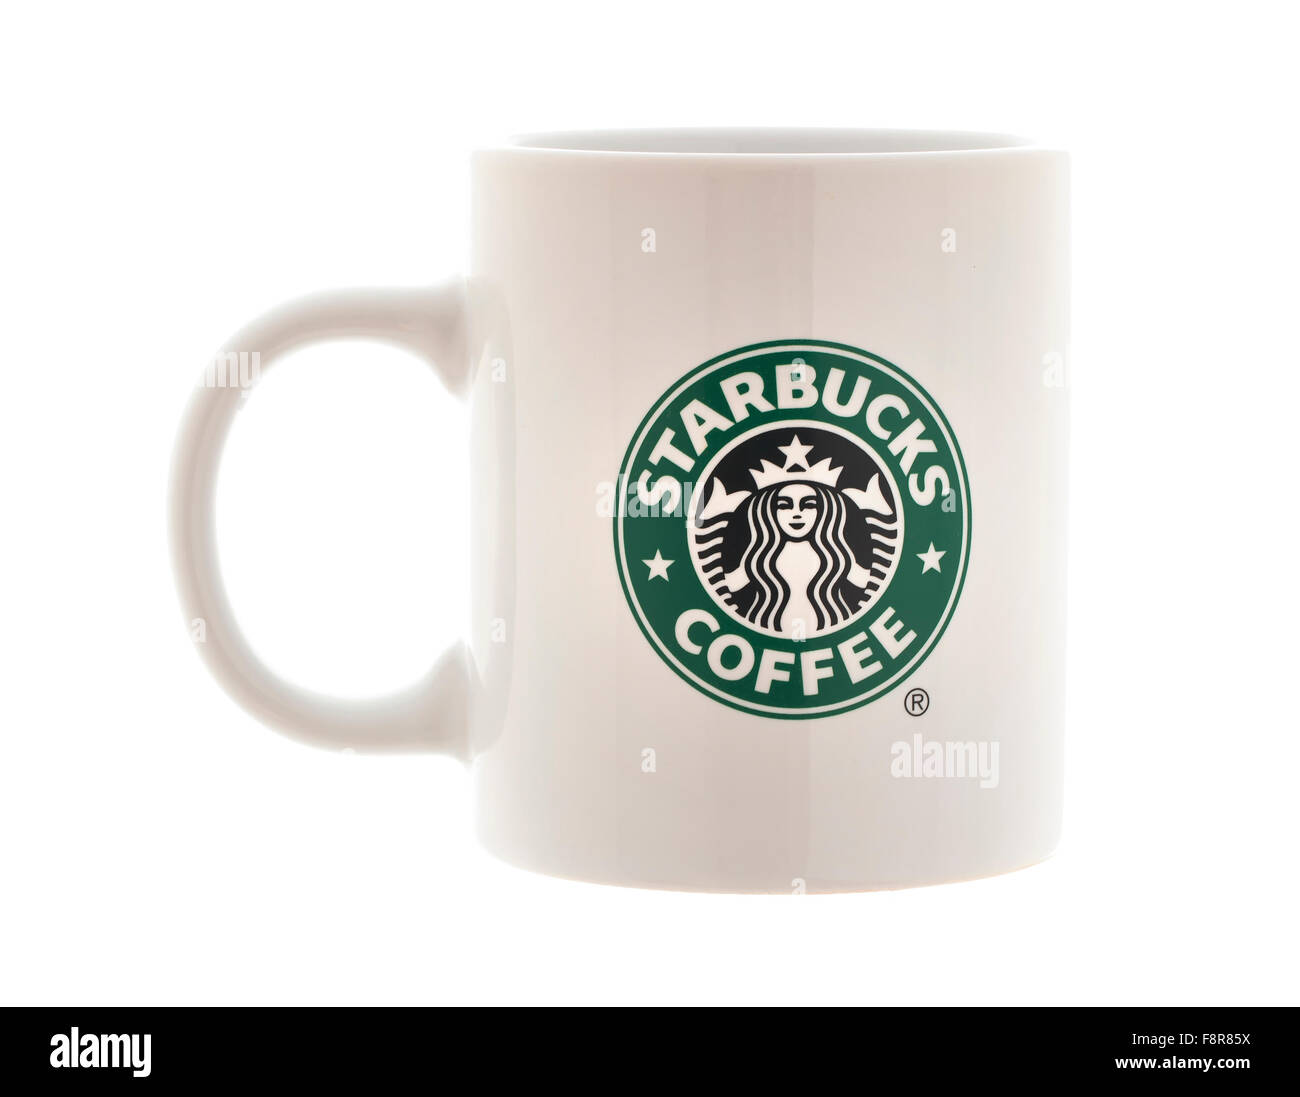 Starbucks coffee mug immagini e fotografie stock ad alta risoluzione - Alamy